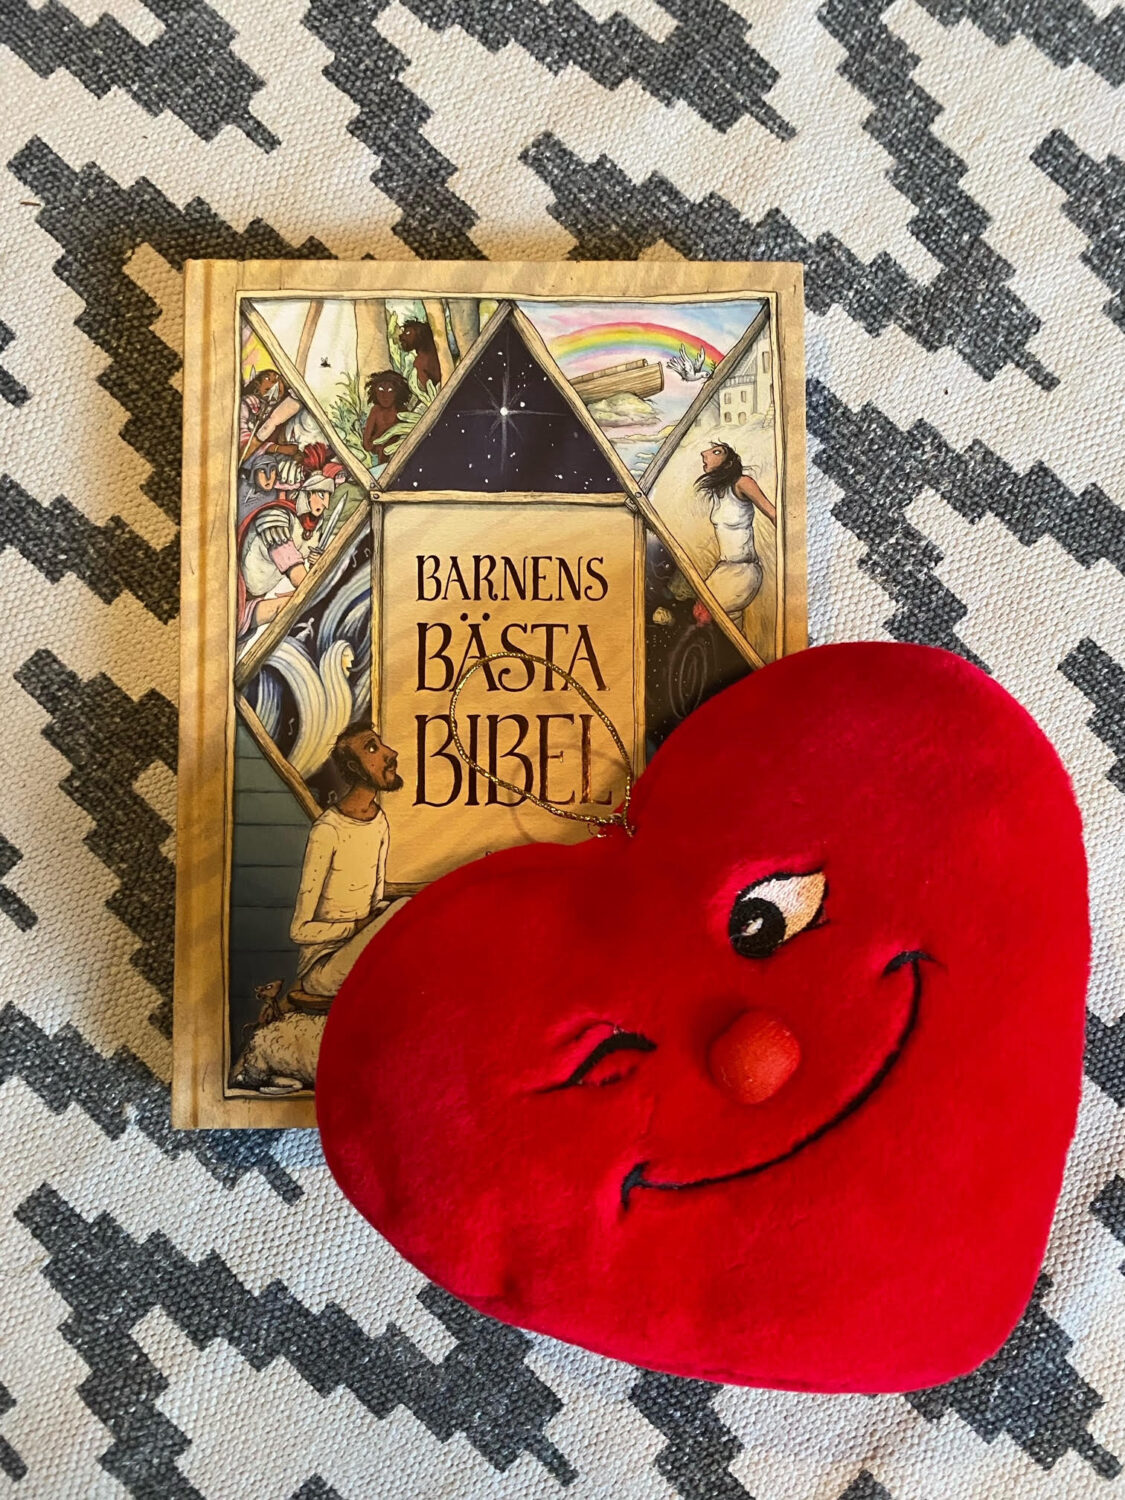 Barnkyrkans maskot Hjätrud: ett stort rött tyghjärta med mun, näsa och ögon, det ena ögat blinkar till oss. Bakom ligger Barnens bästa bibel.